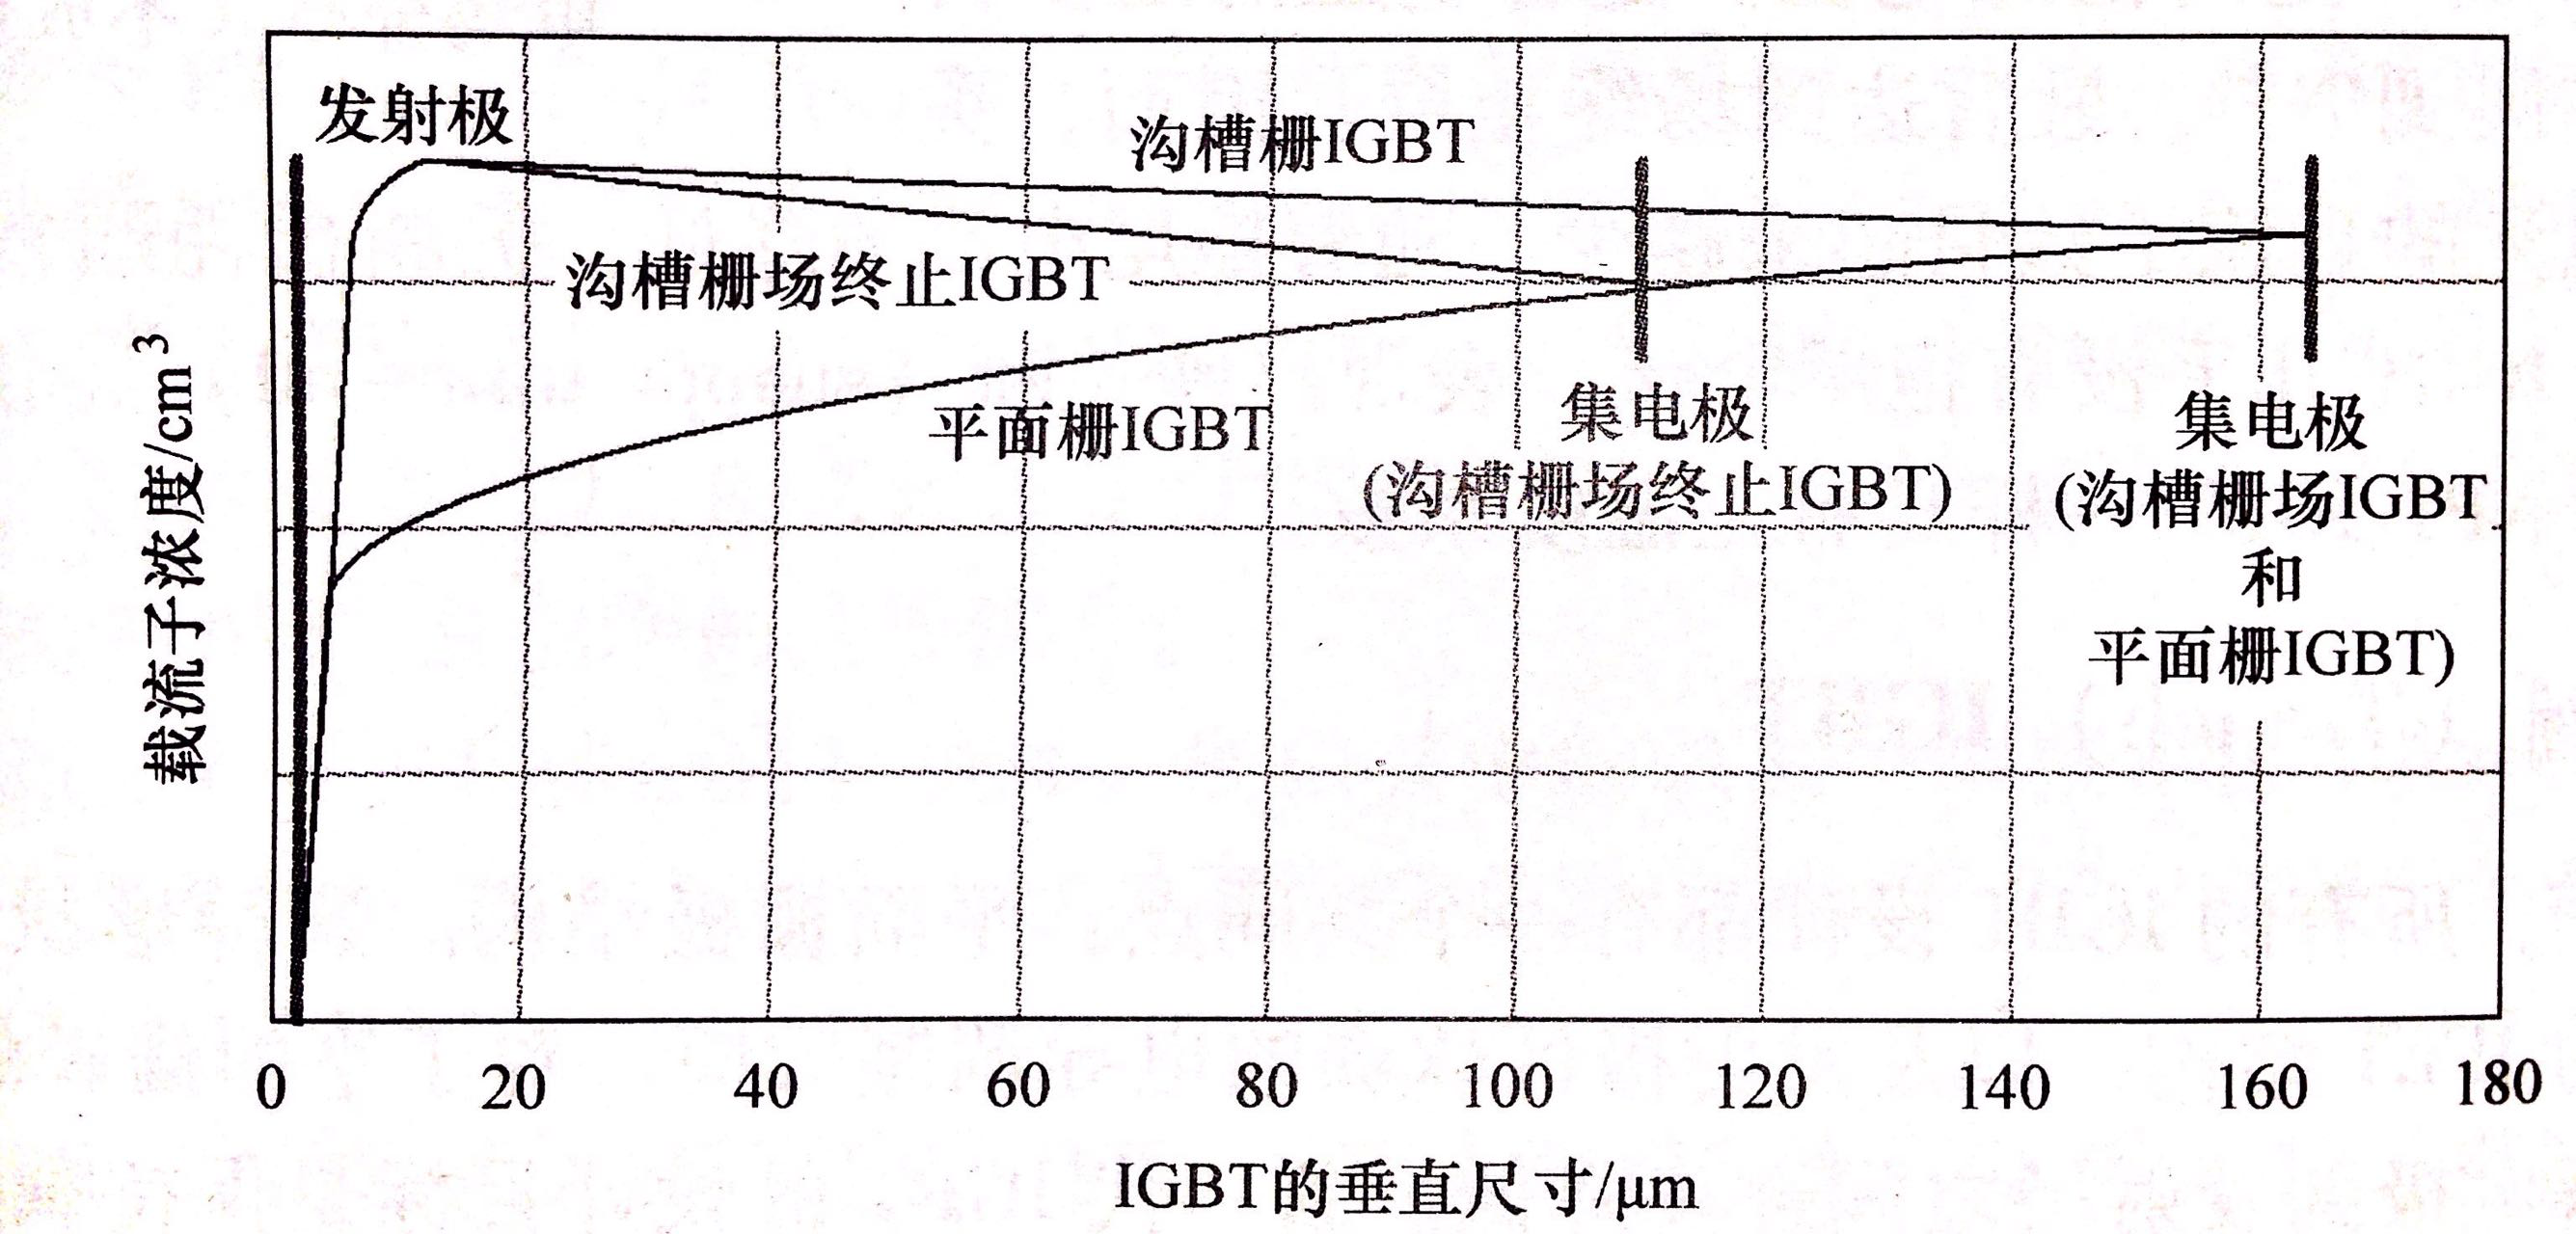 图2 沟槽栅和平面栅结构IGBT内部载流子浓度比较